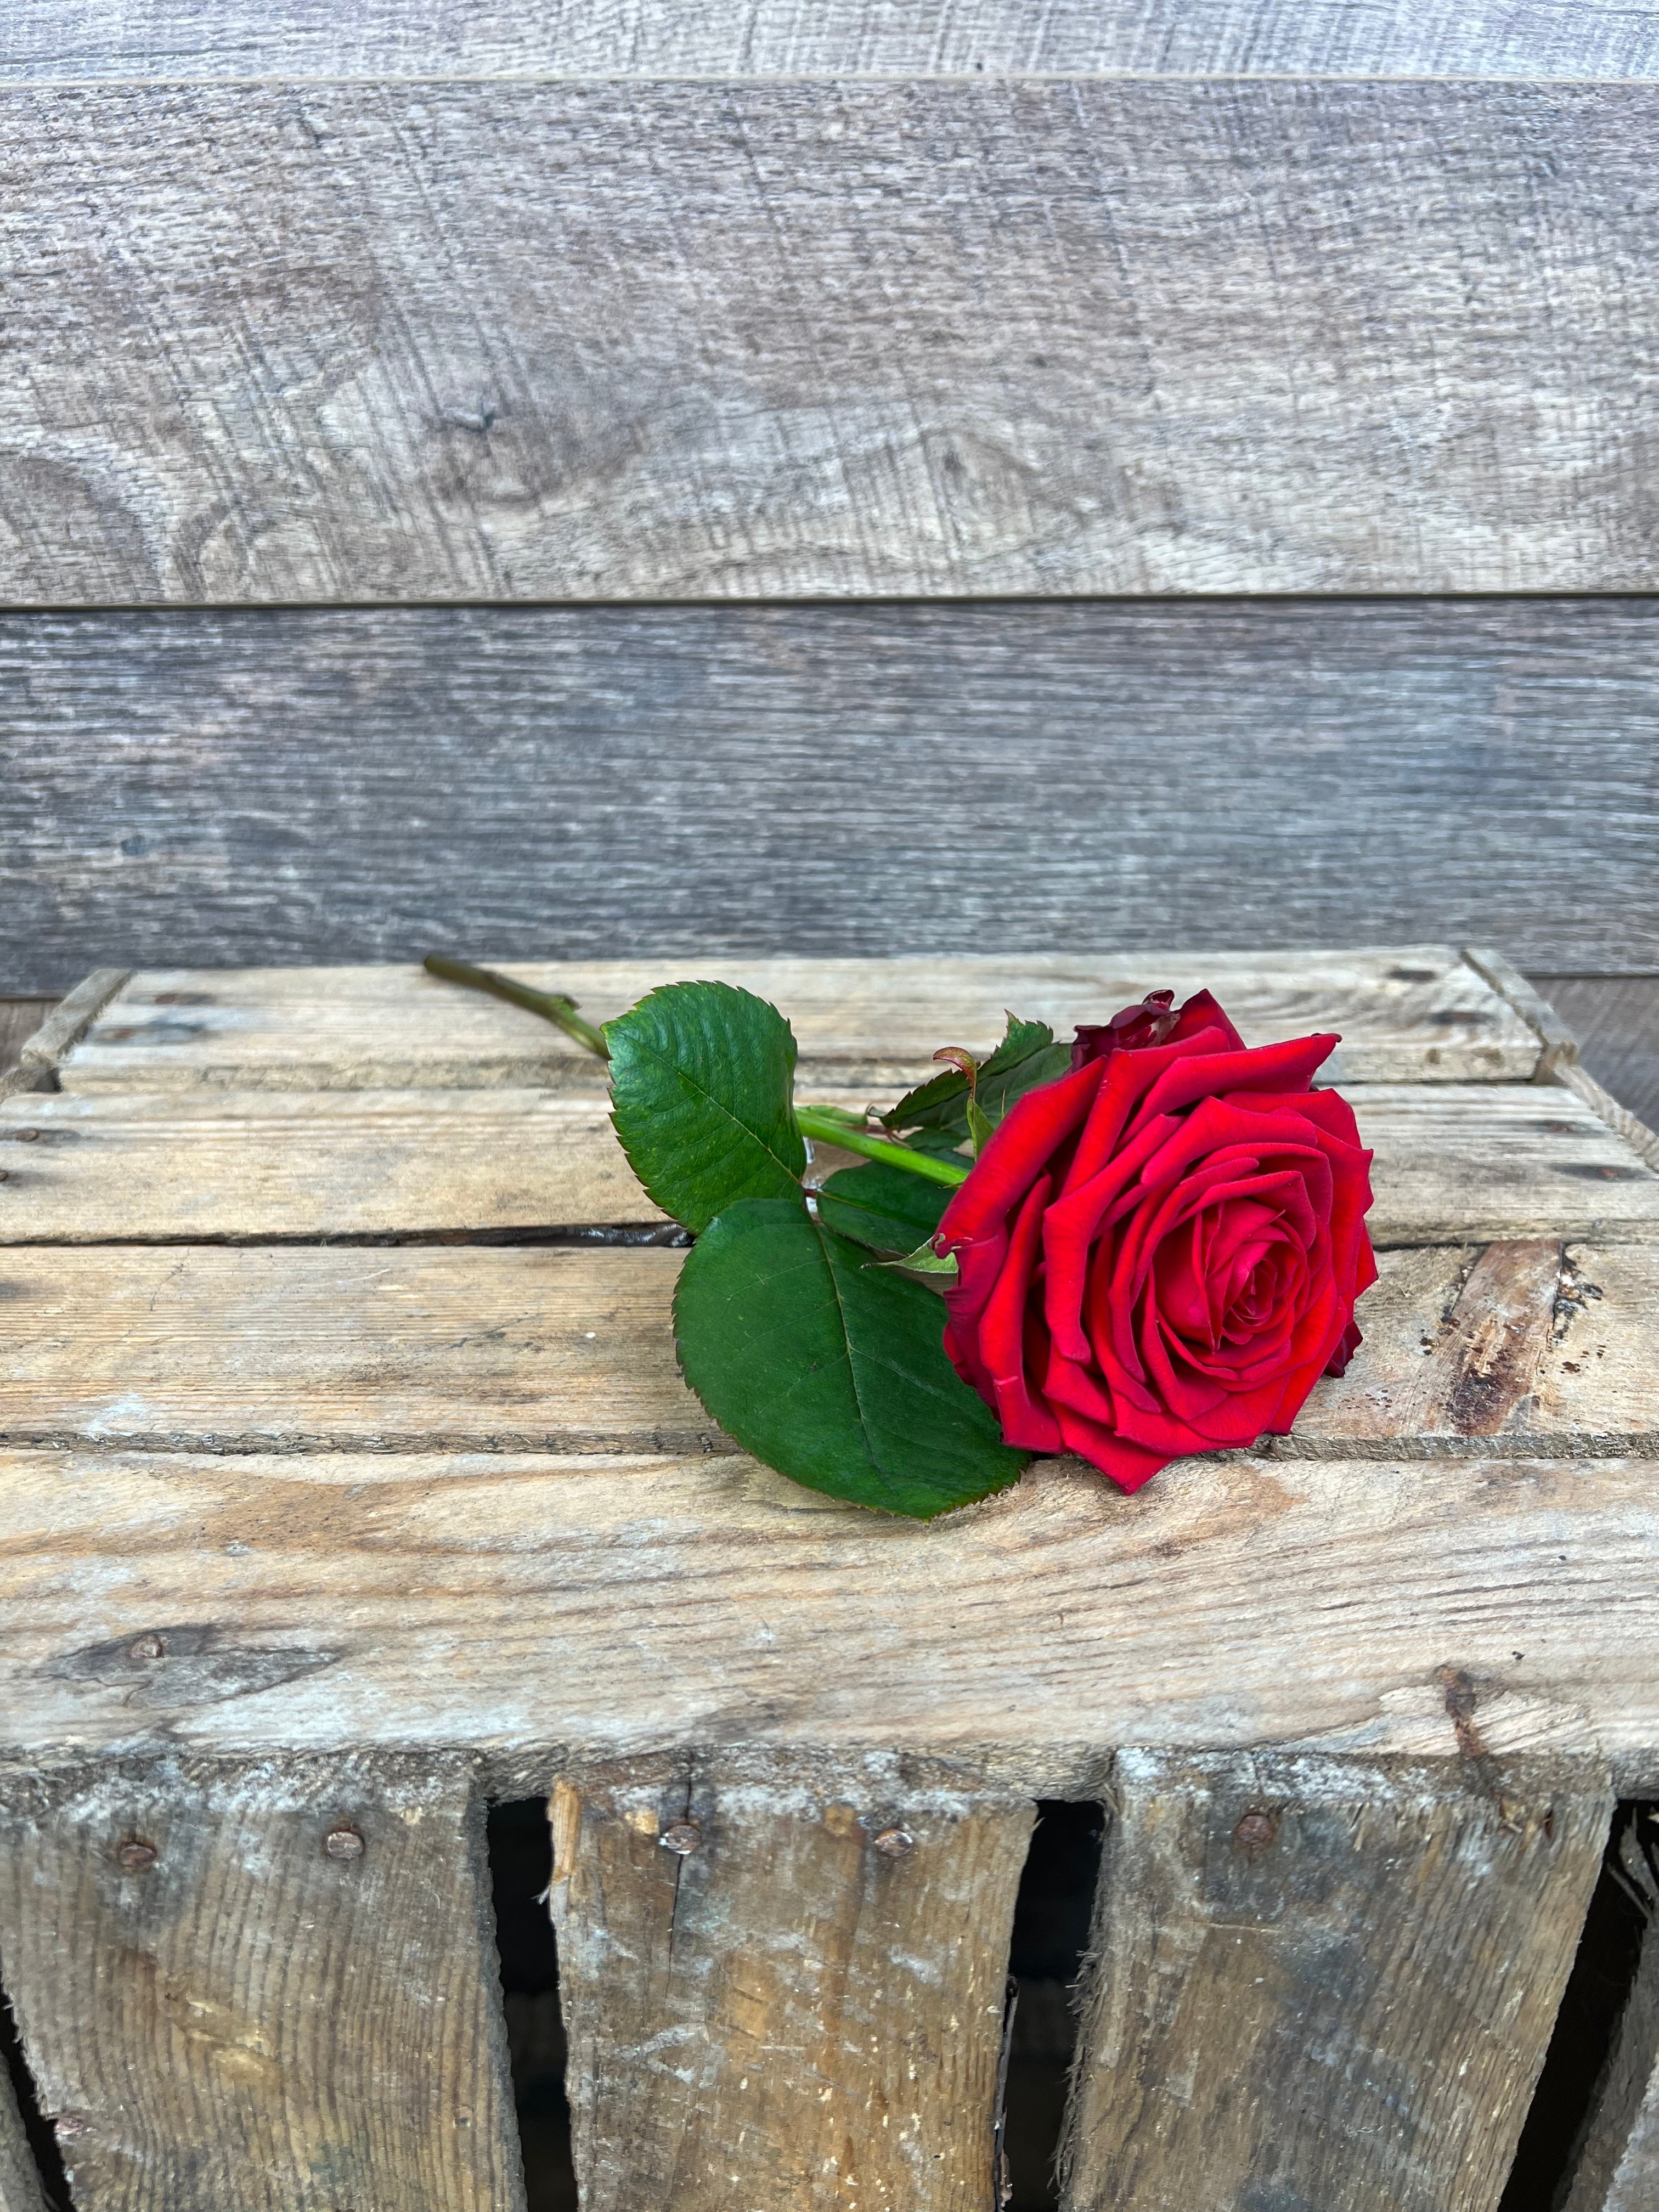 Ge kärlekens blomma och låt din kärlekshälsning tala högt med vår vackra röda ros. Oavsett tillfälle kommer den att sprida glädje och skapa minnen som varar en livstid.